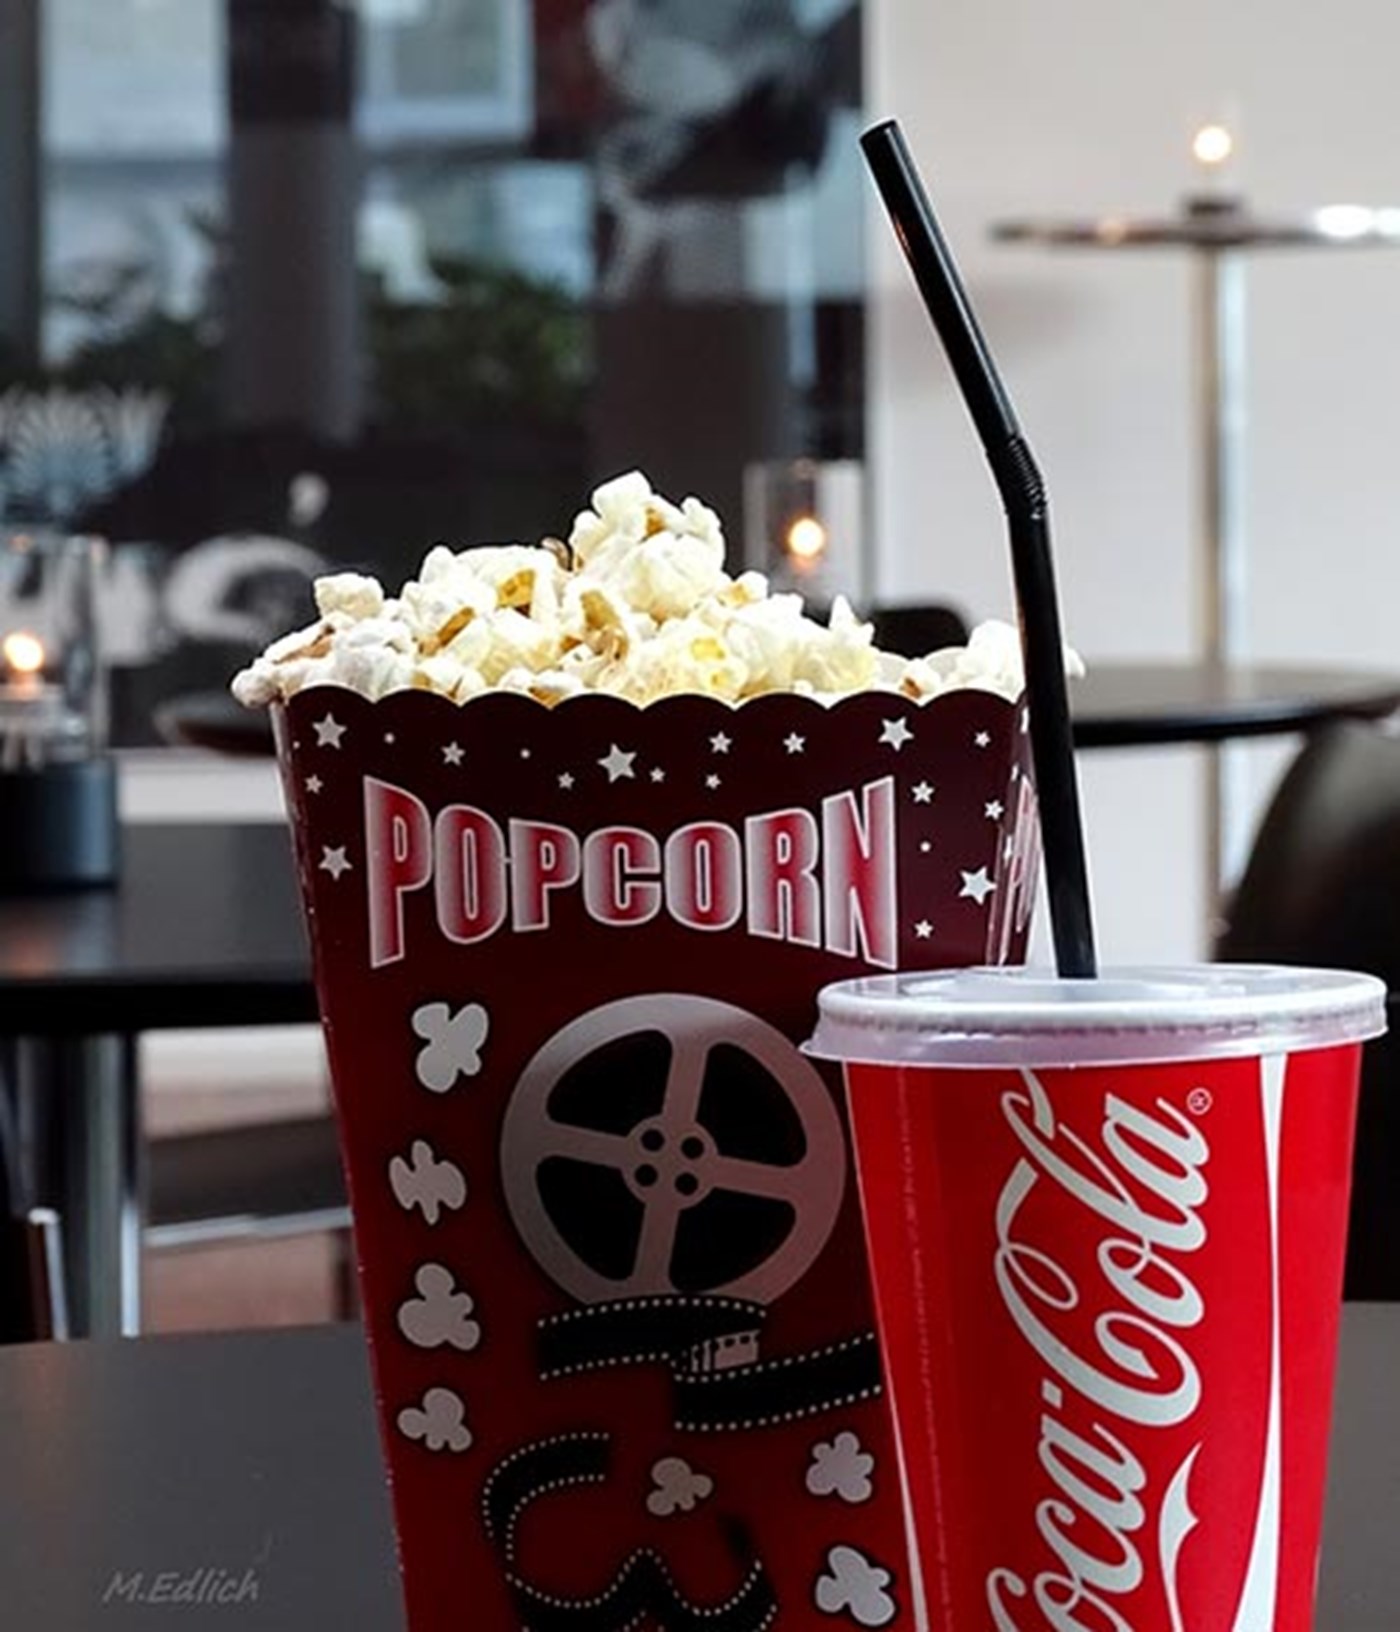 Når du skal i biografen har vi altid frisklavede popcorn og der tilhørende sodavand